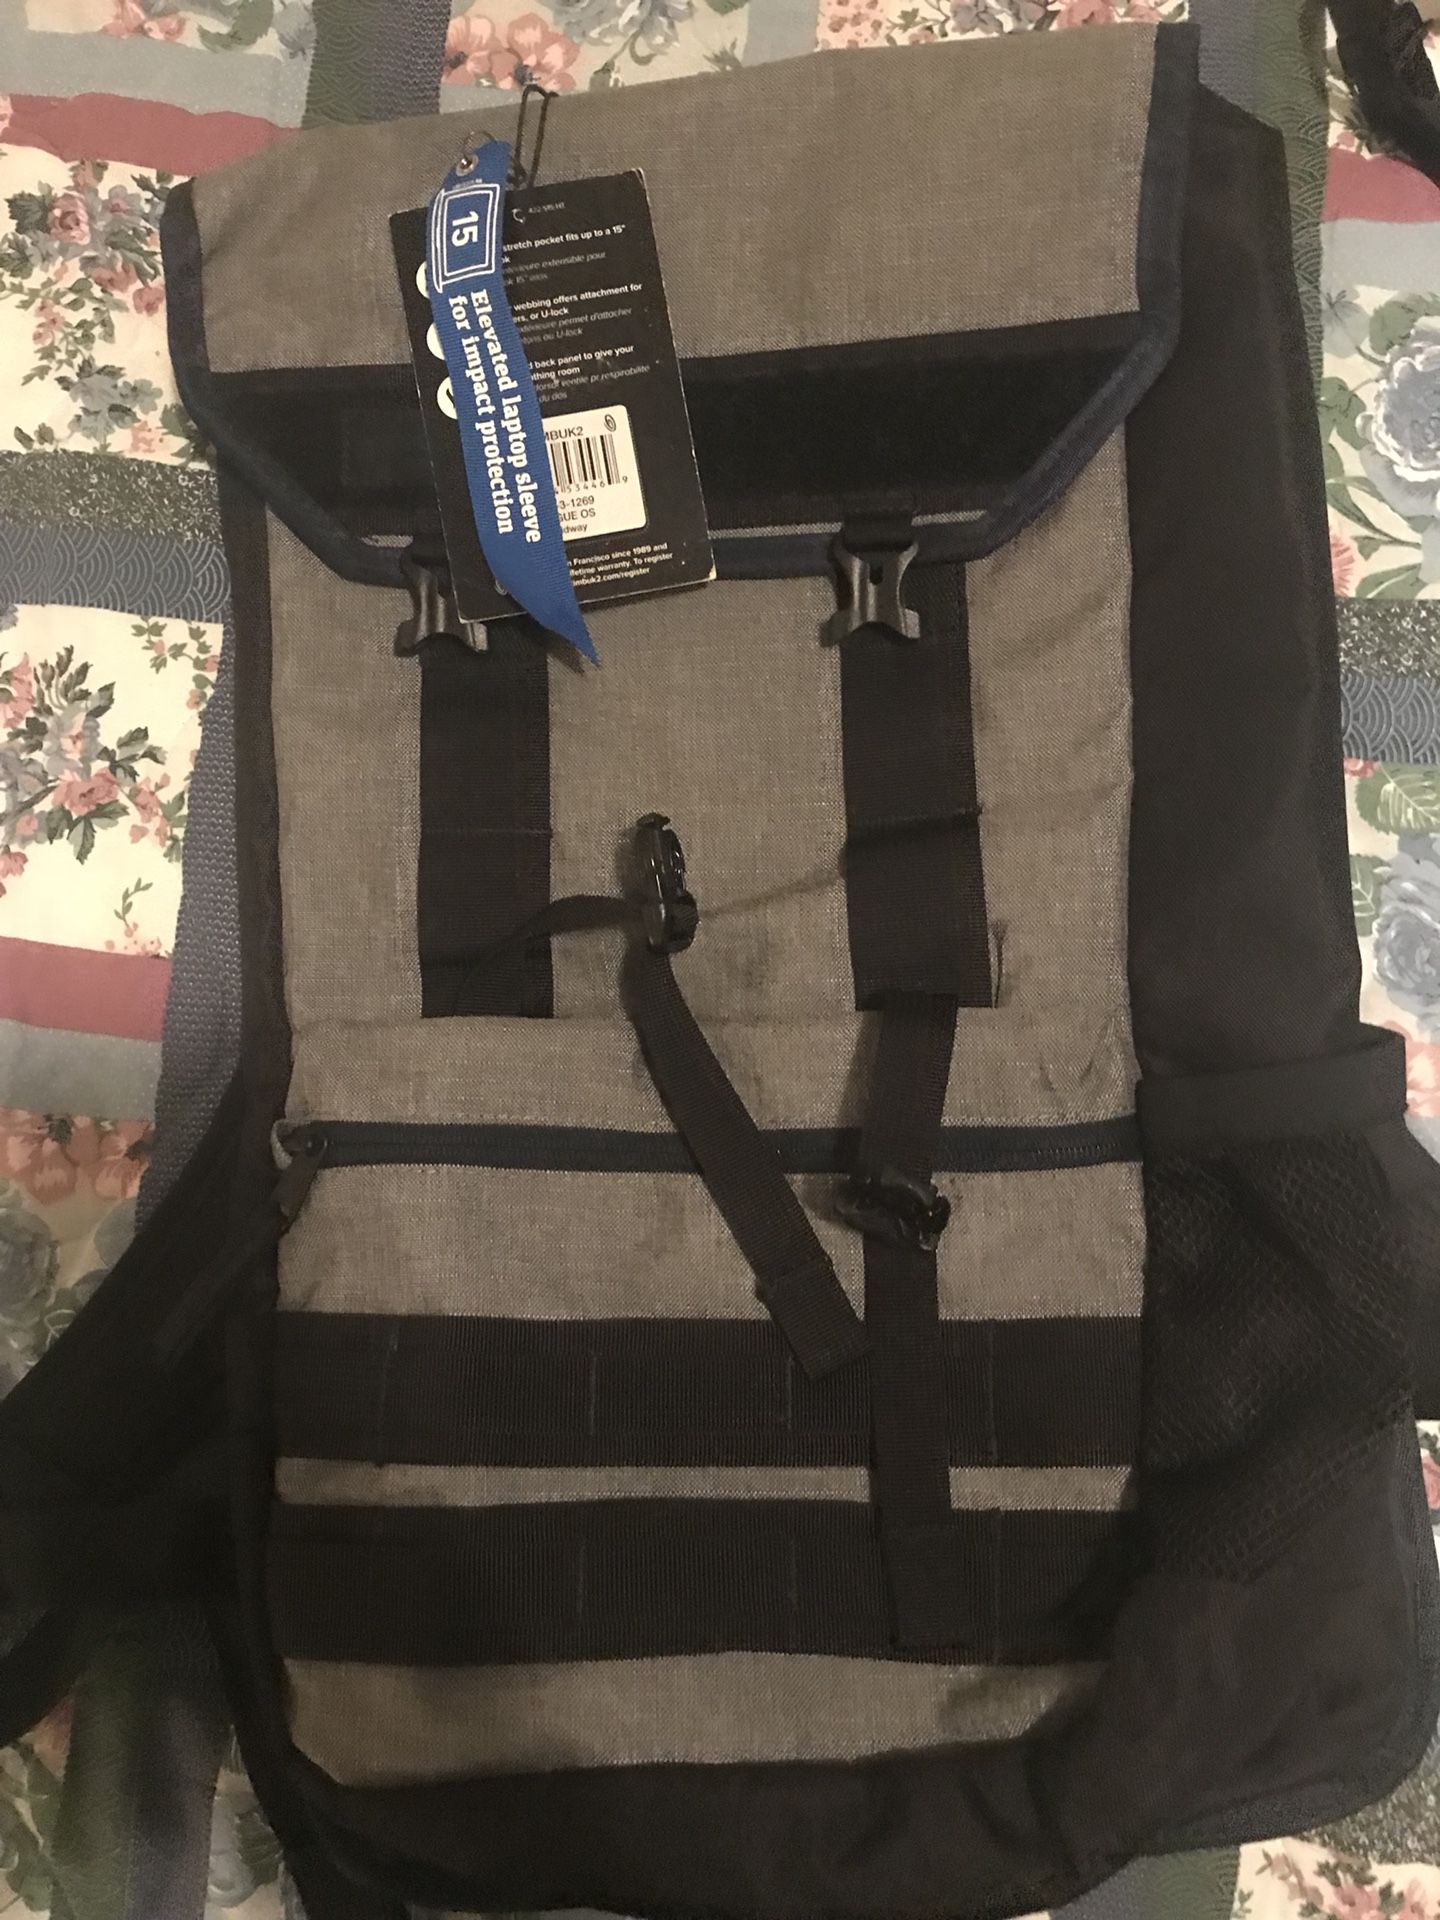 Timbuk2 Rogue backpack with tags